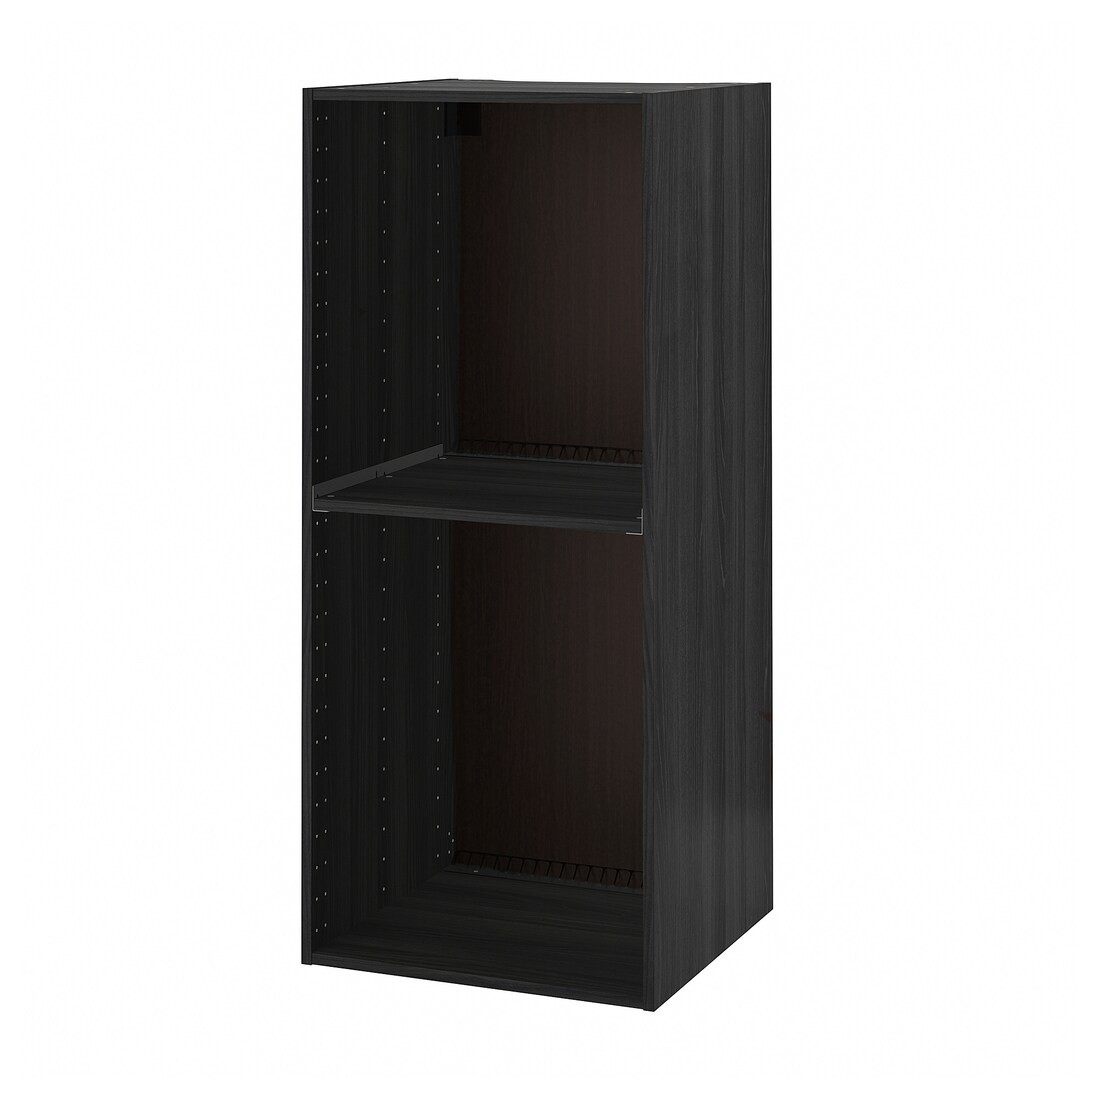 IKEA METOD МЕТОД Висока шафа для холодильника / духовки, імітація дерева чорний, 60x60x140 см 10385479 103.854.79